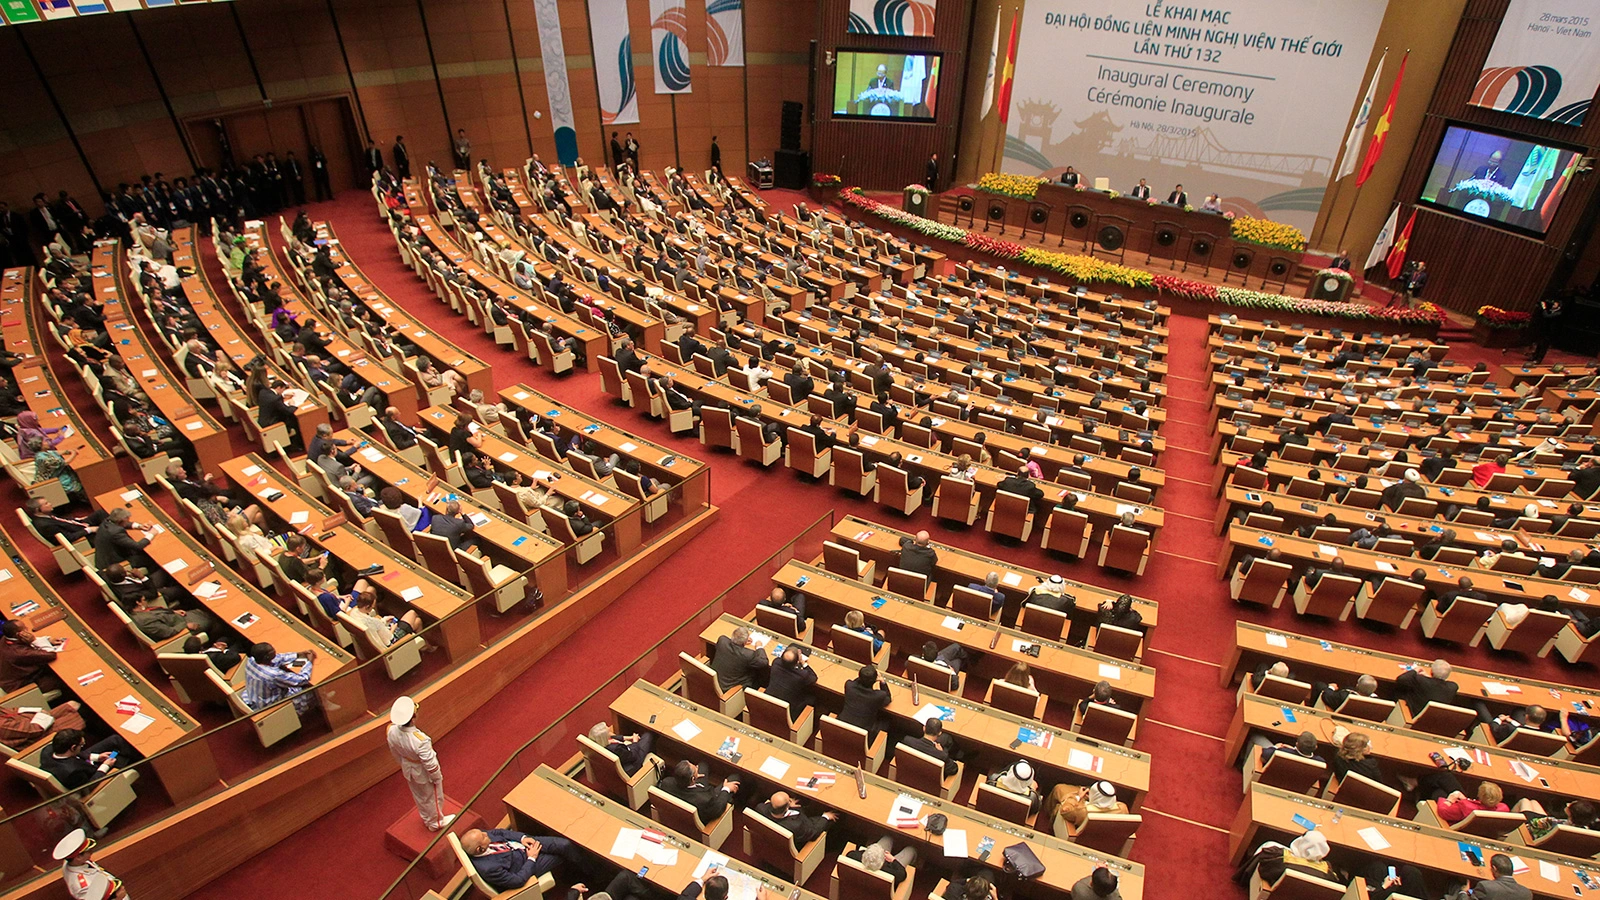 تجديد الثقة في المغرب بلجنة الأمن للاتحاد البرلماني الدولي